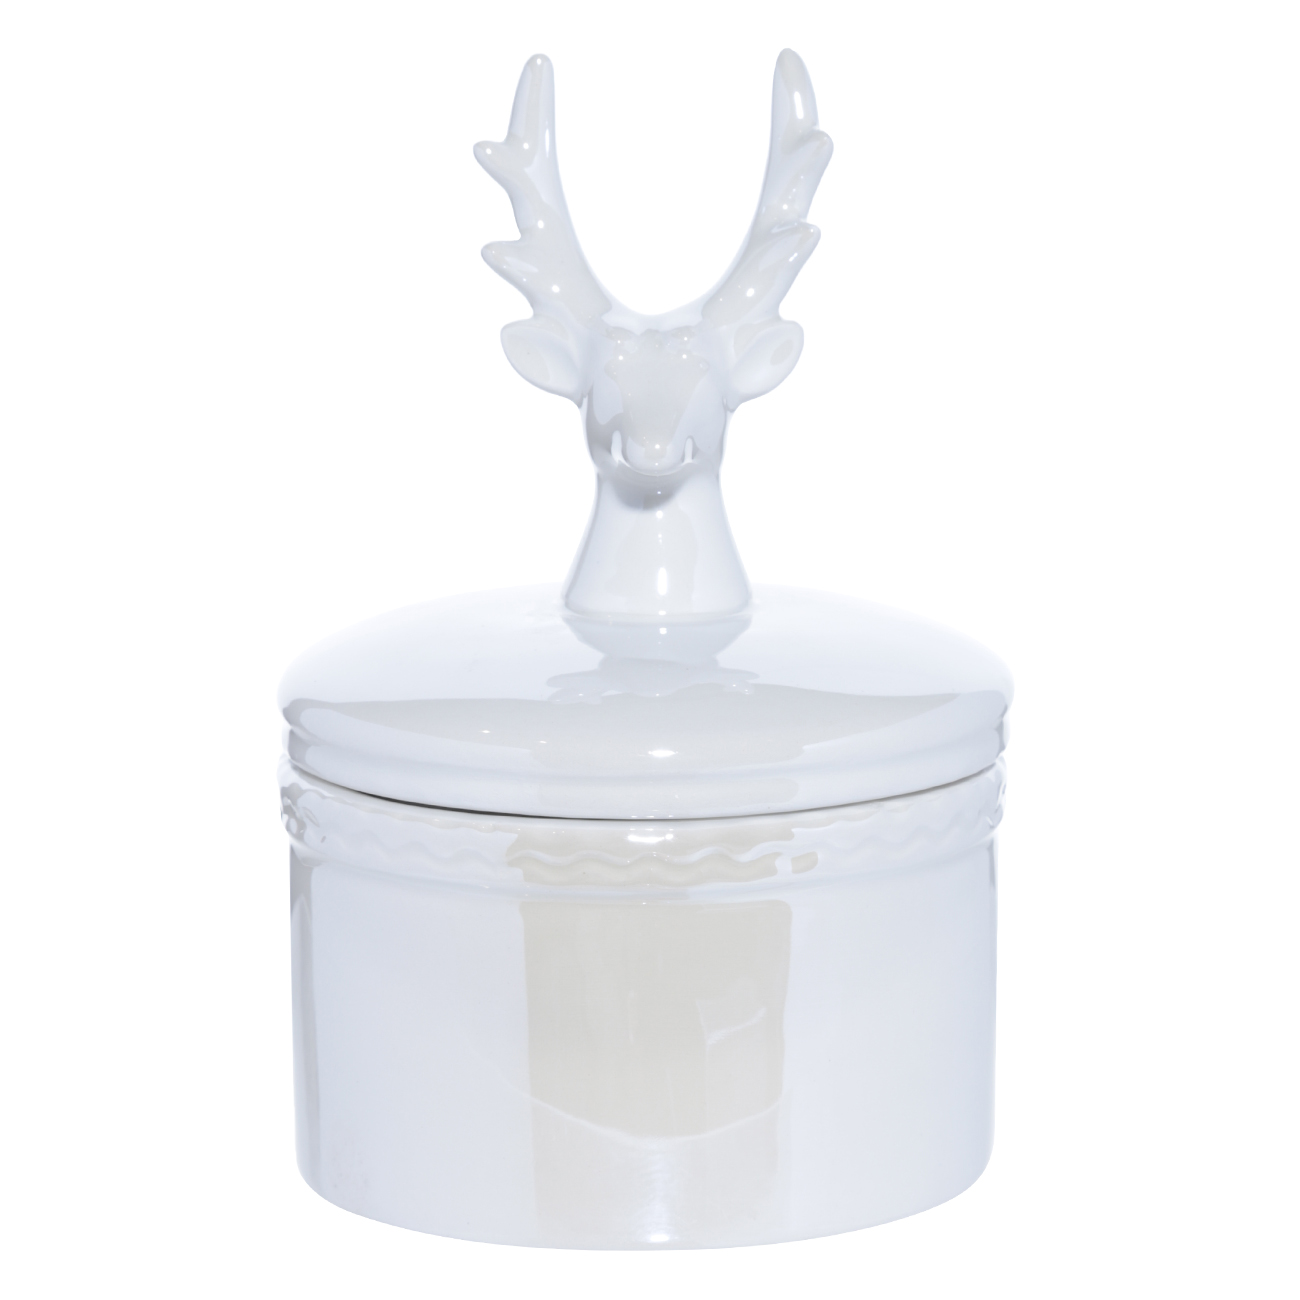 Шкатулка, 12 см, керамика, белая, Олень, Winter deer - фото 1